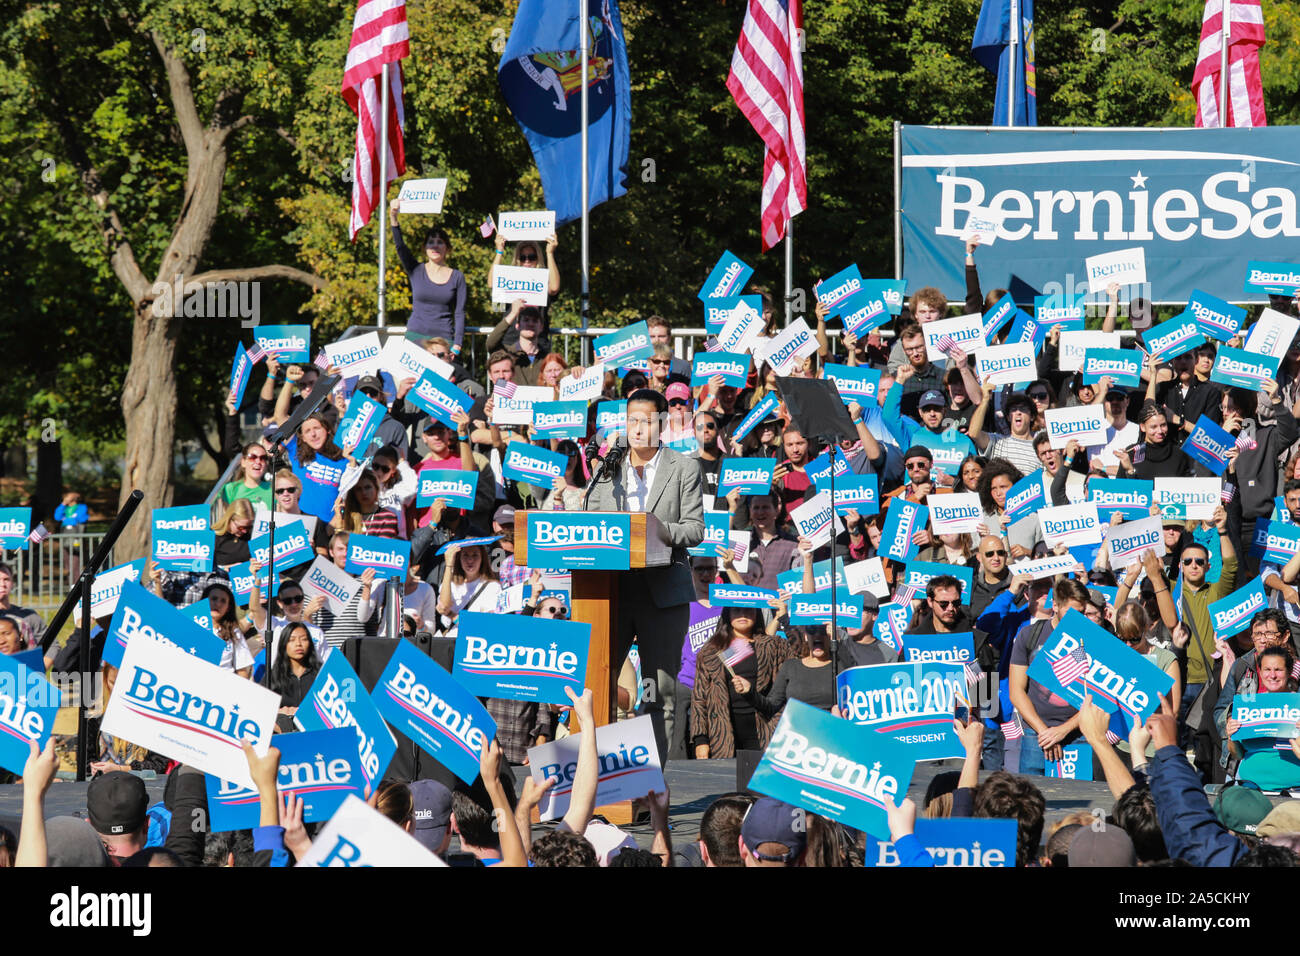 Queensbridge Park, Queens, Nueva York, Estados Unidos - 19 de octubre de 2019: Gran rally político "Bernie is Back" . Bernie Sanders a la campaña política Foto de stock